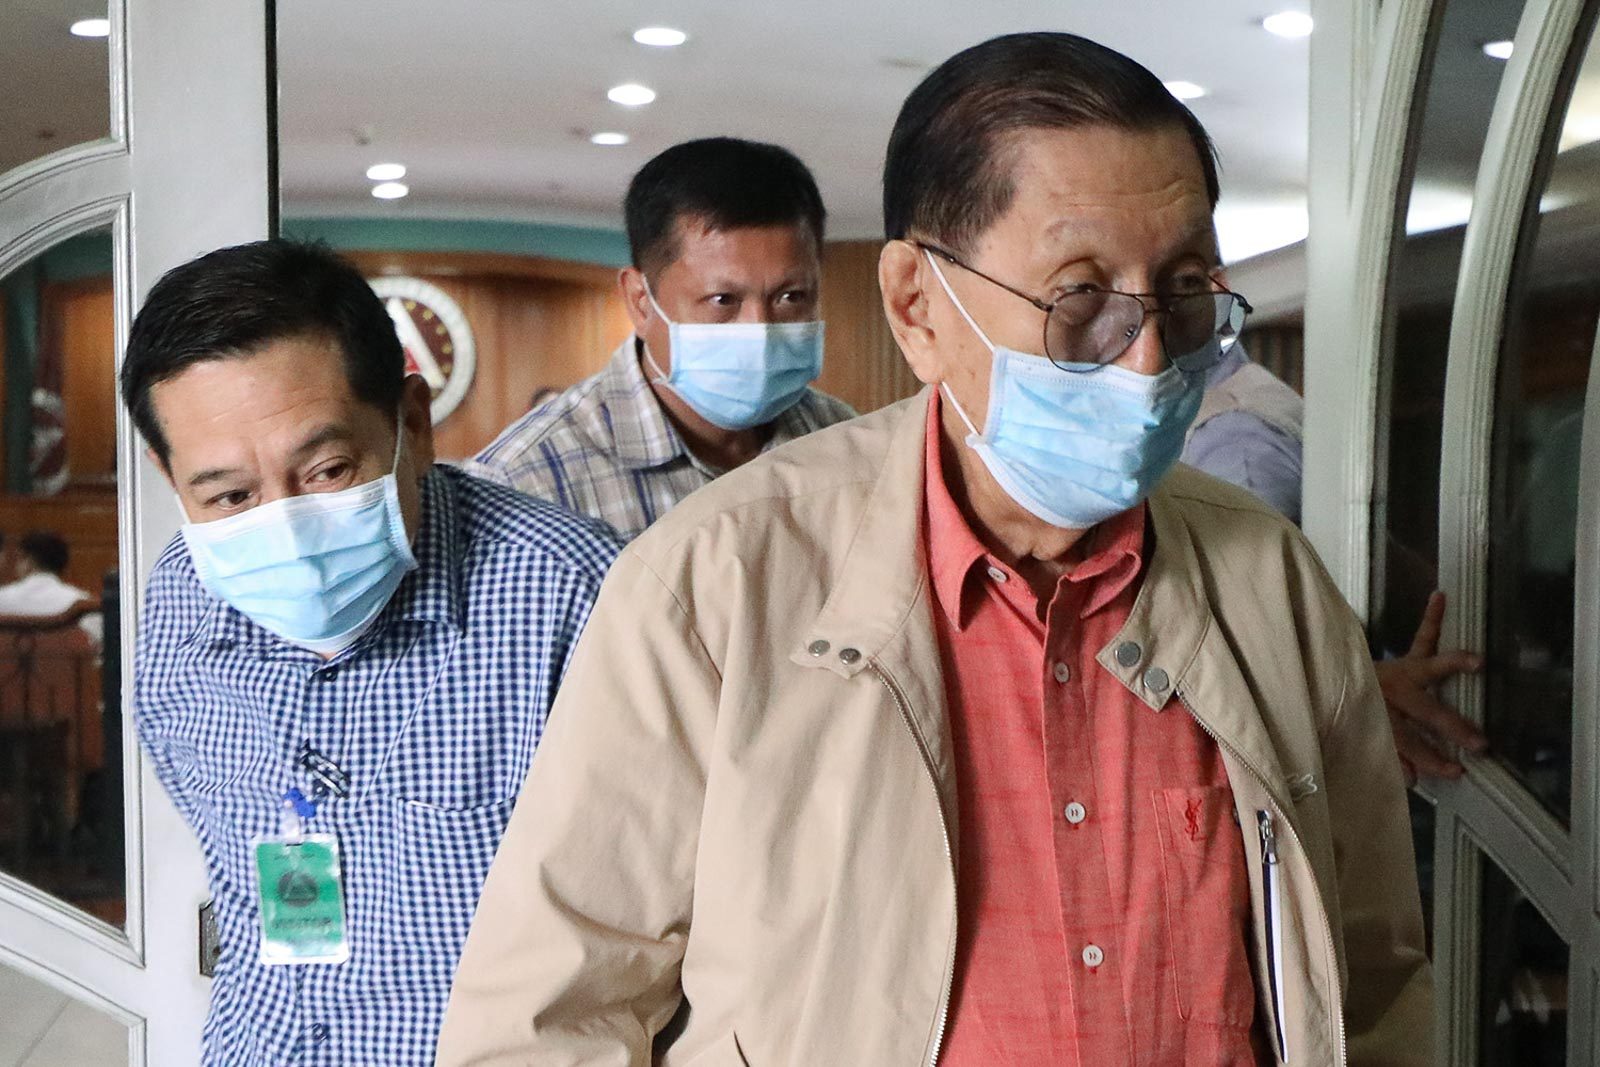 Supreme Court affirms dismissal of Enrile libel suit vs columnist